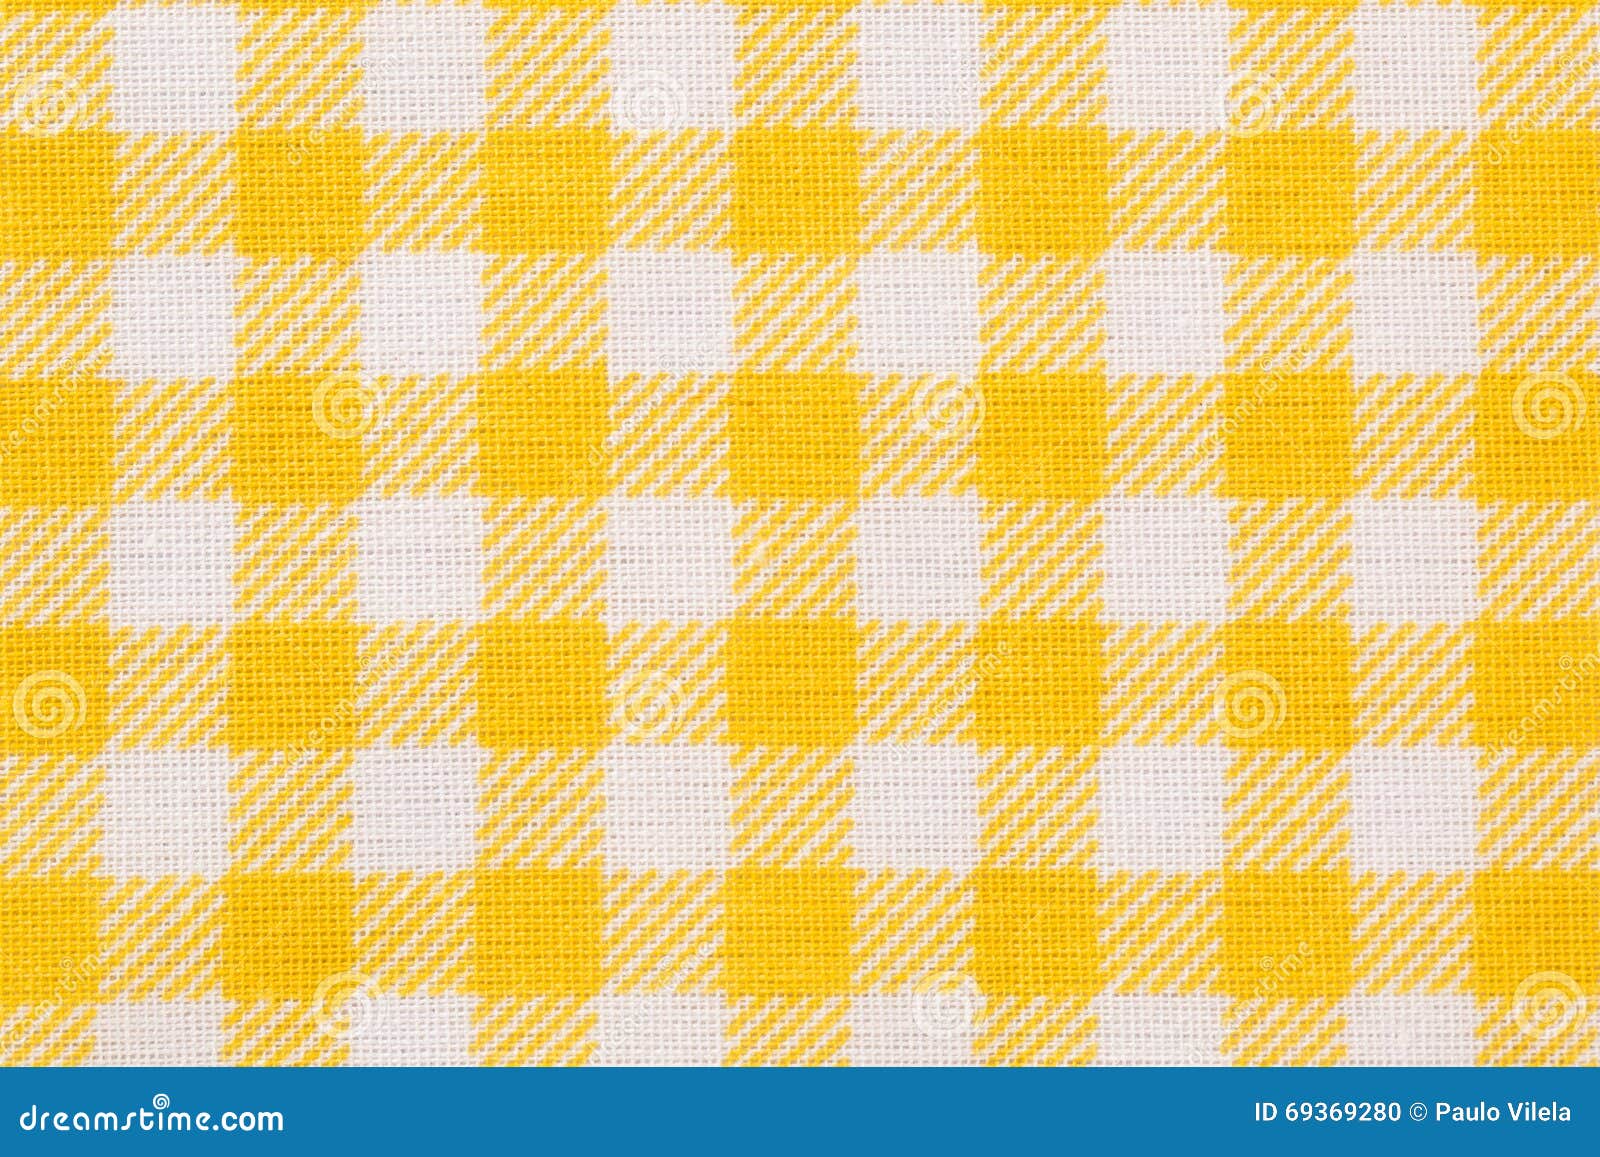 Tecido Estampado para Patchwork - Fio Tinto Xadrez Vichy 1,0cm Amarelo  (0,50x1,40) - Fernando Maluhy - Tecidos - Magazine Luiza